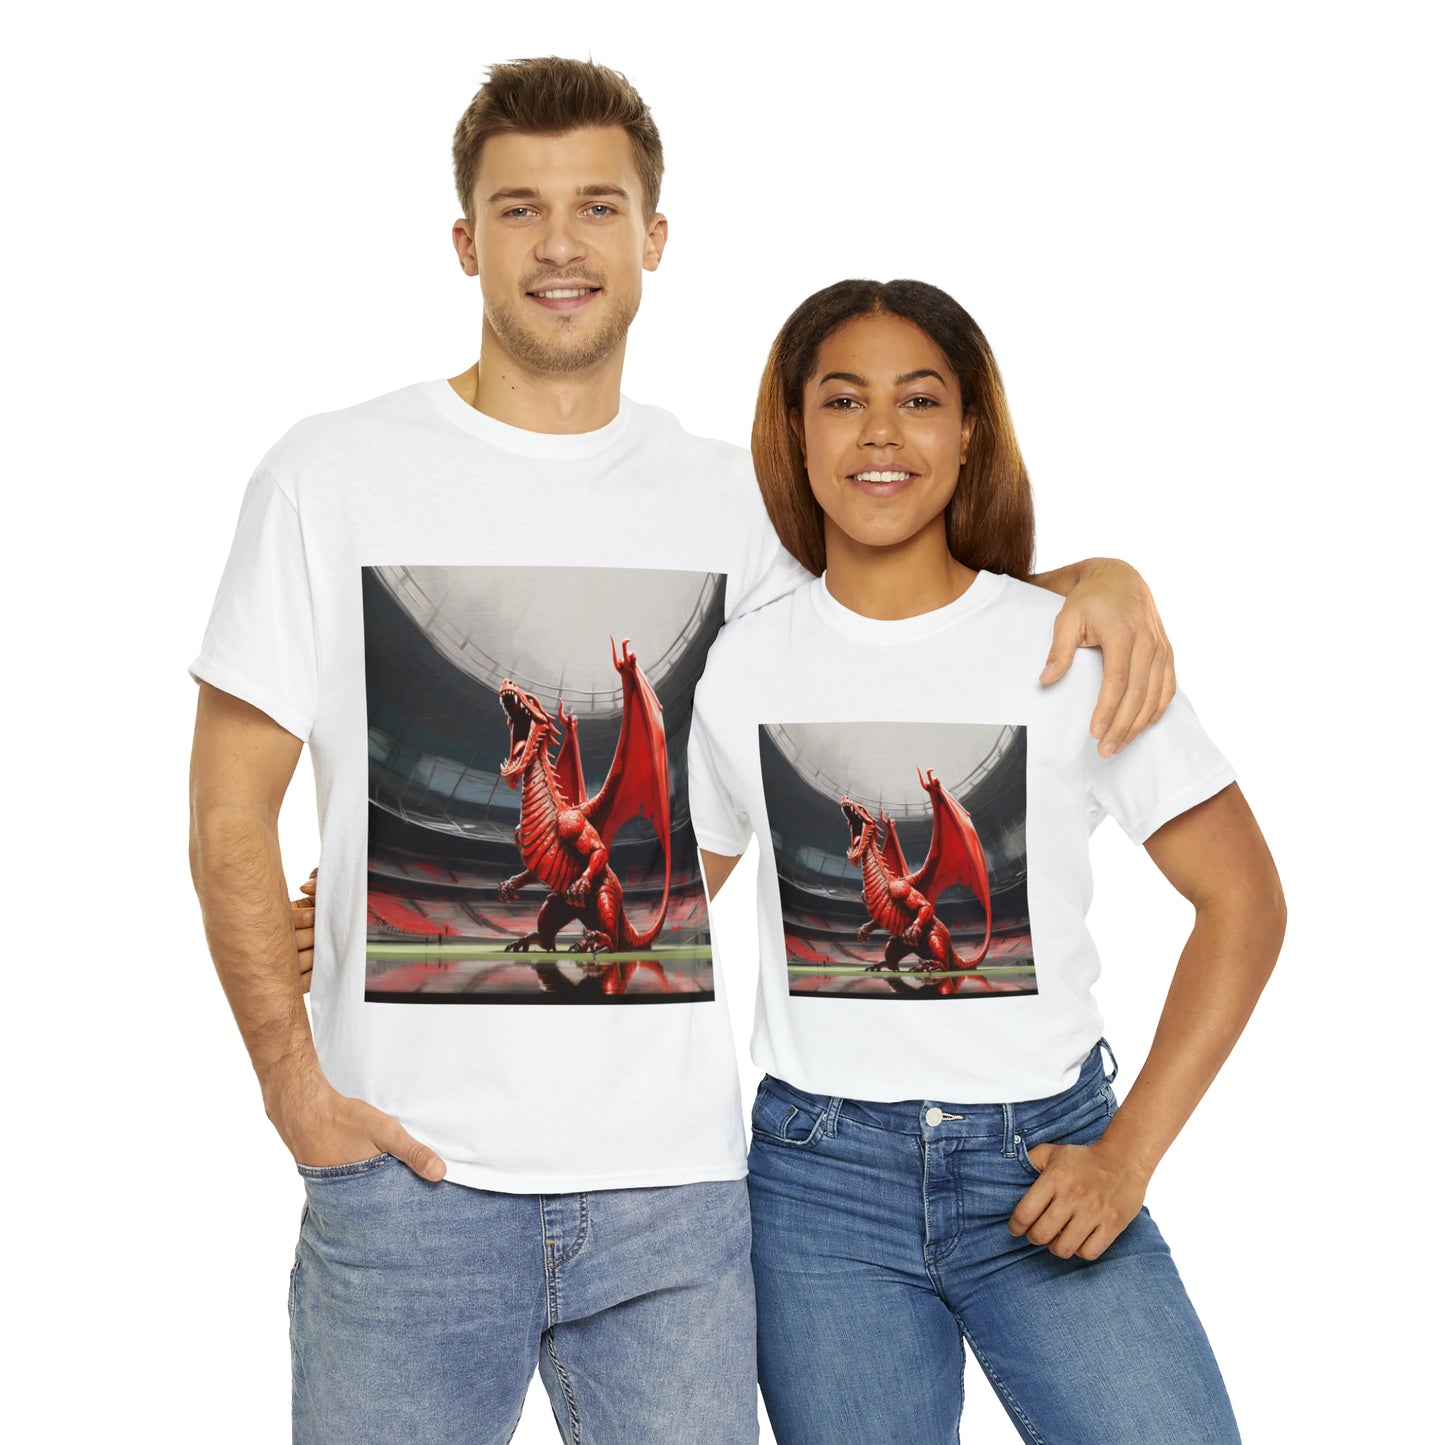 Welsh Dragon 2 - light shirts